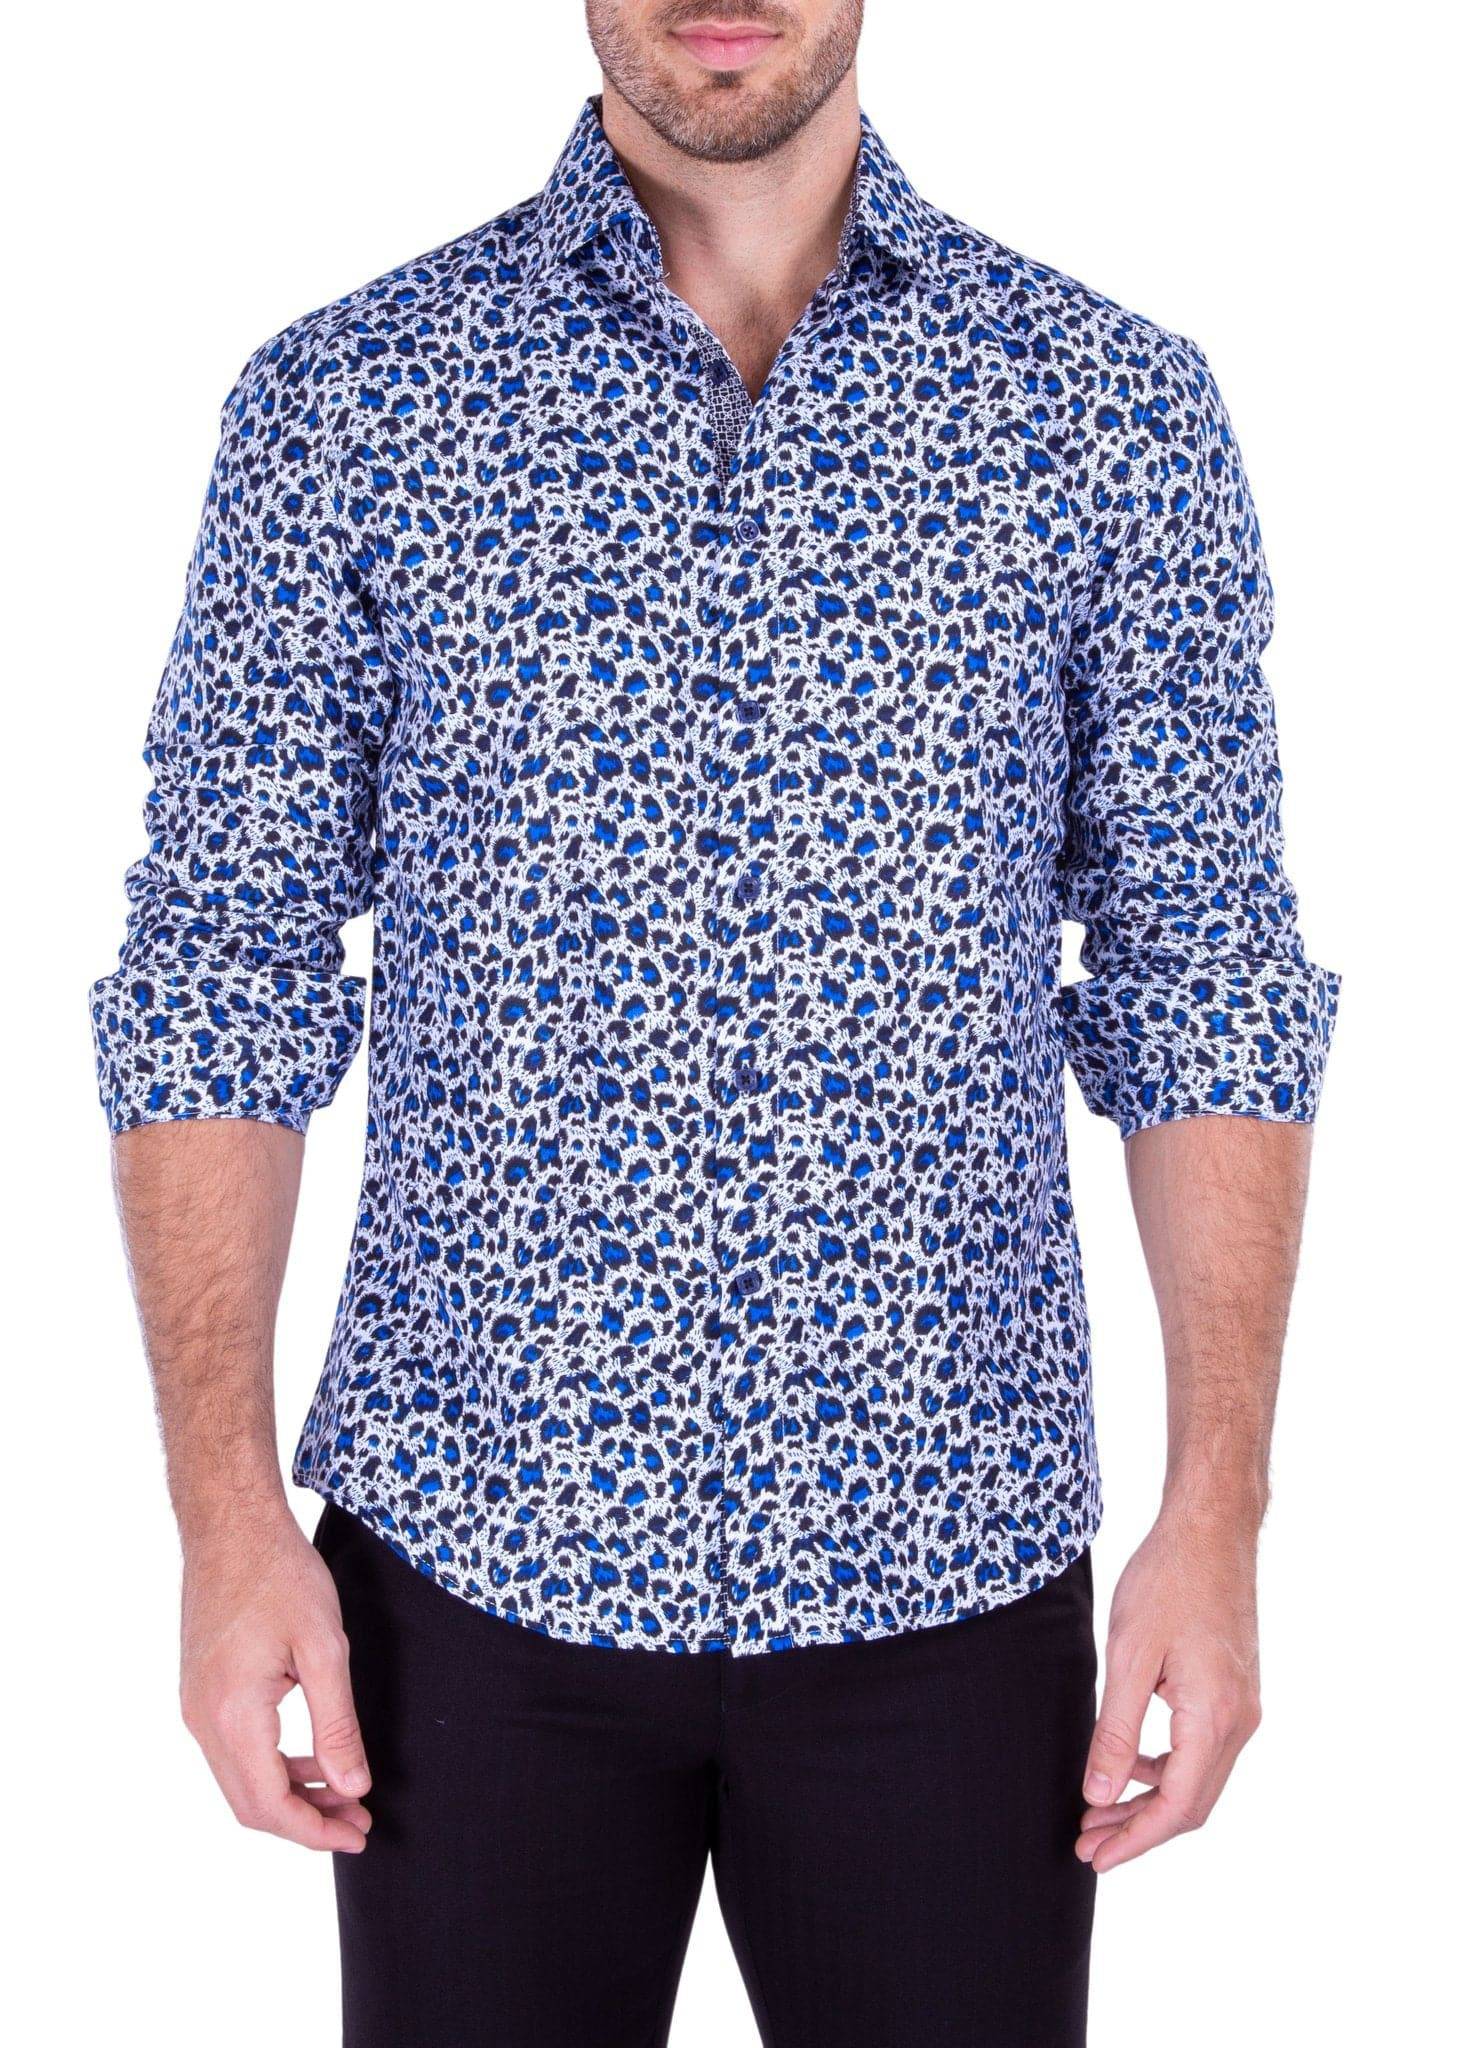 Blue Leopard Print Shirt for Men DNK Mobile | D&K SUIT DISCOUNTERS